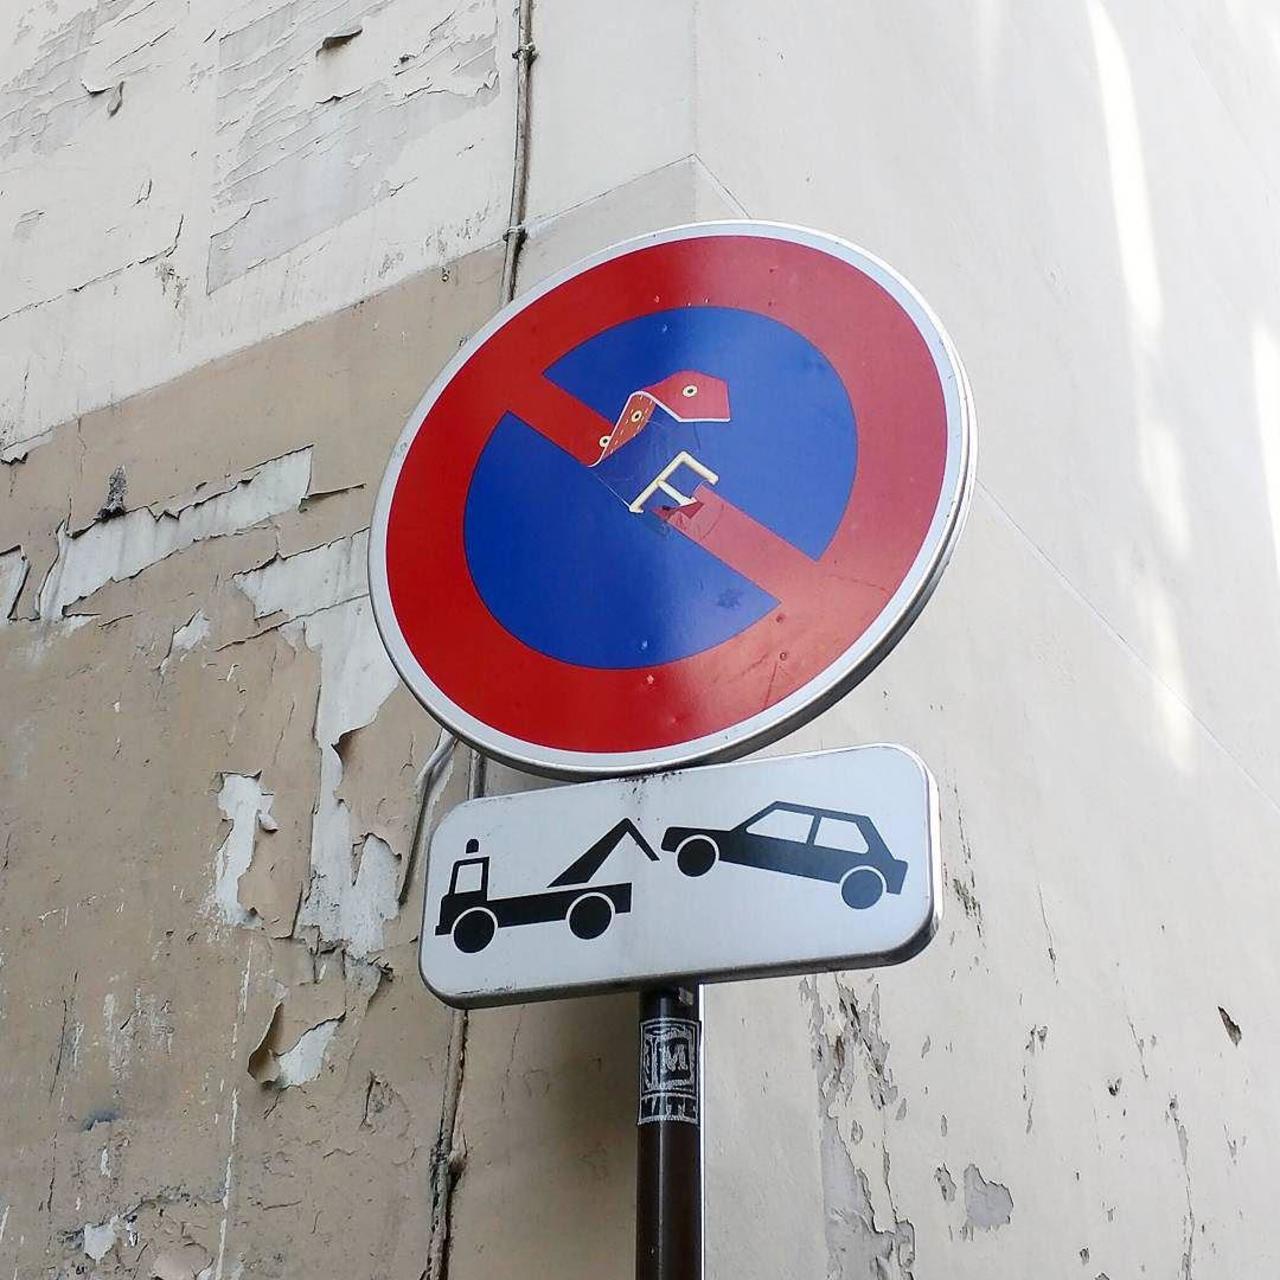 #Paris #graffiti photo by @alphaquadra http://ift.tt/1LOvF21 #StreetArt http://t.co/mvkjJzMTwg